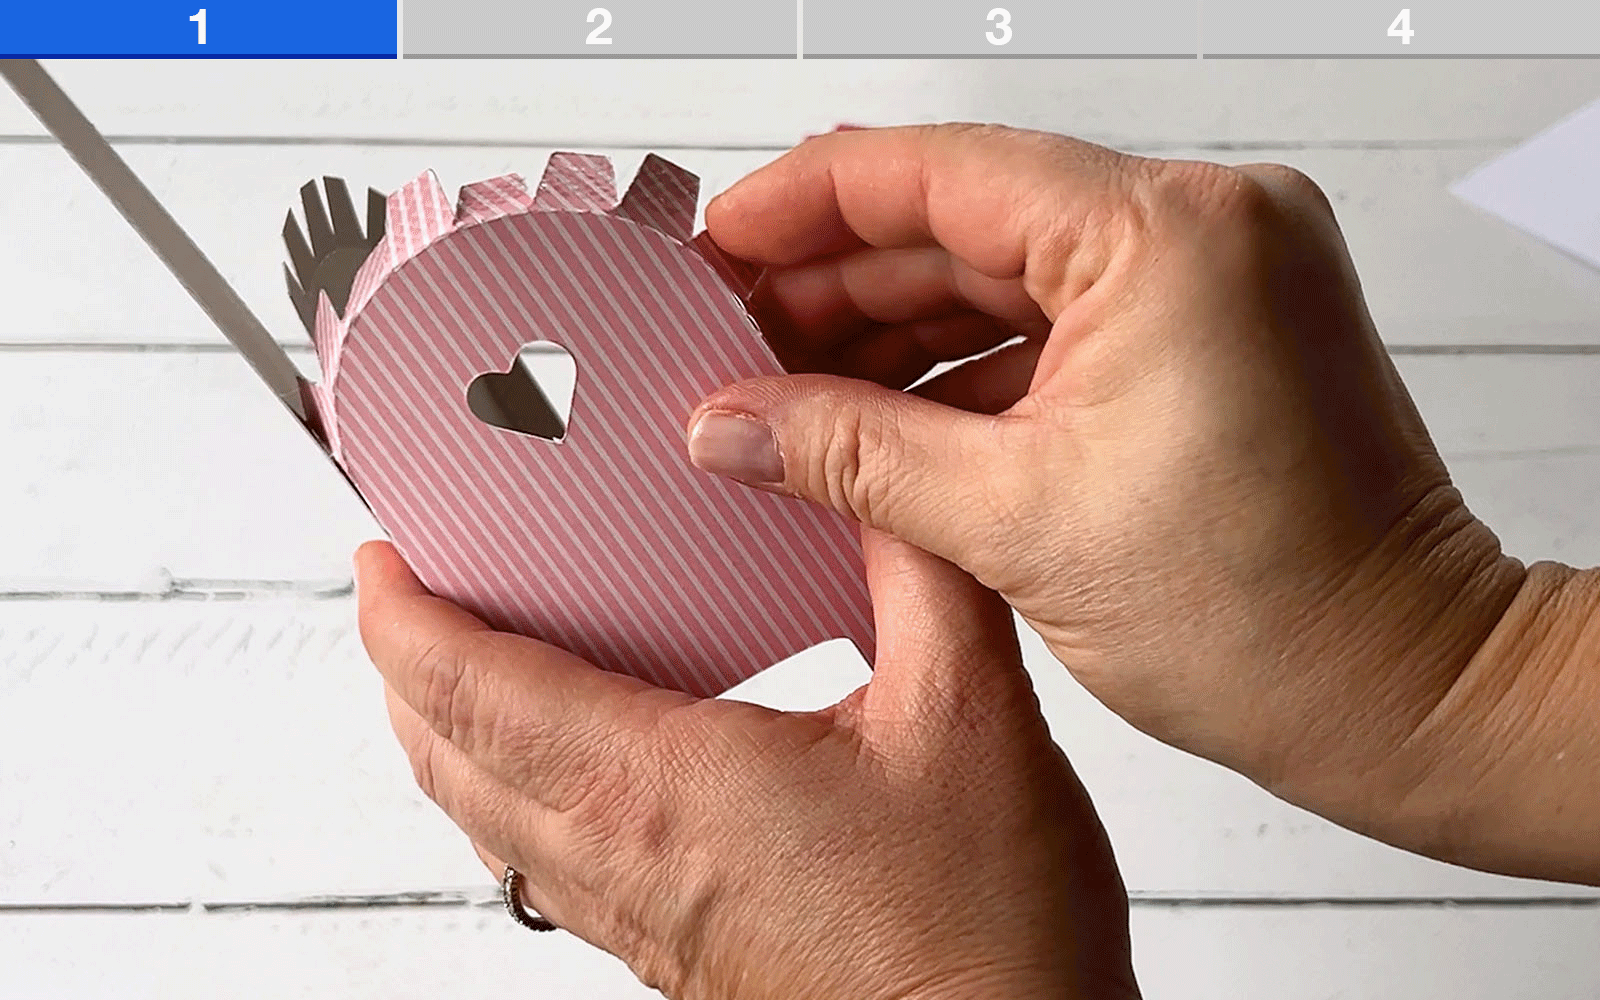 Hands folding card